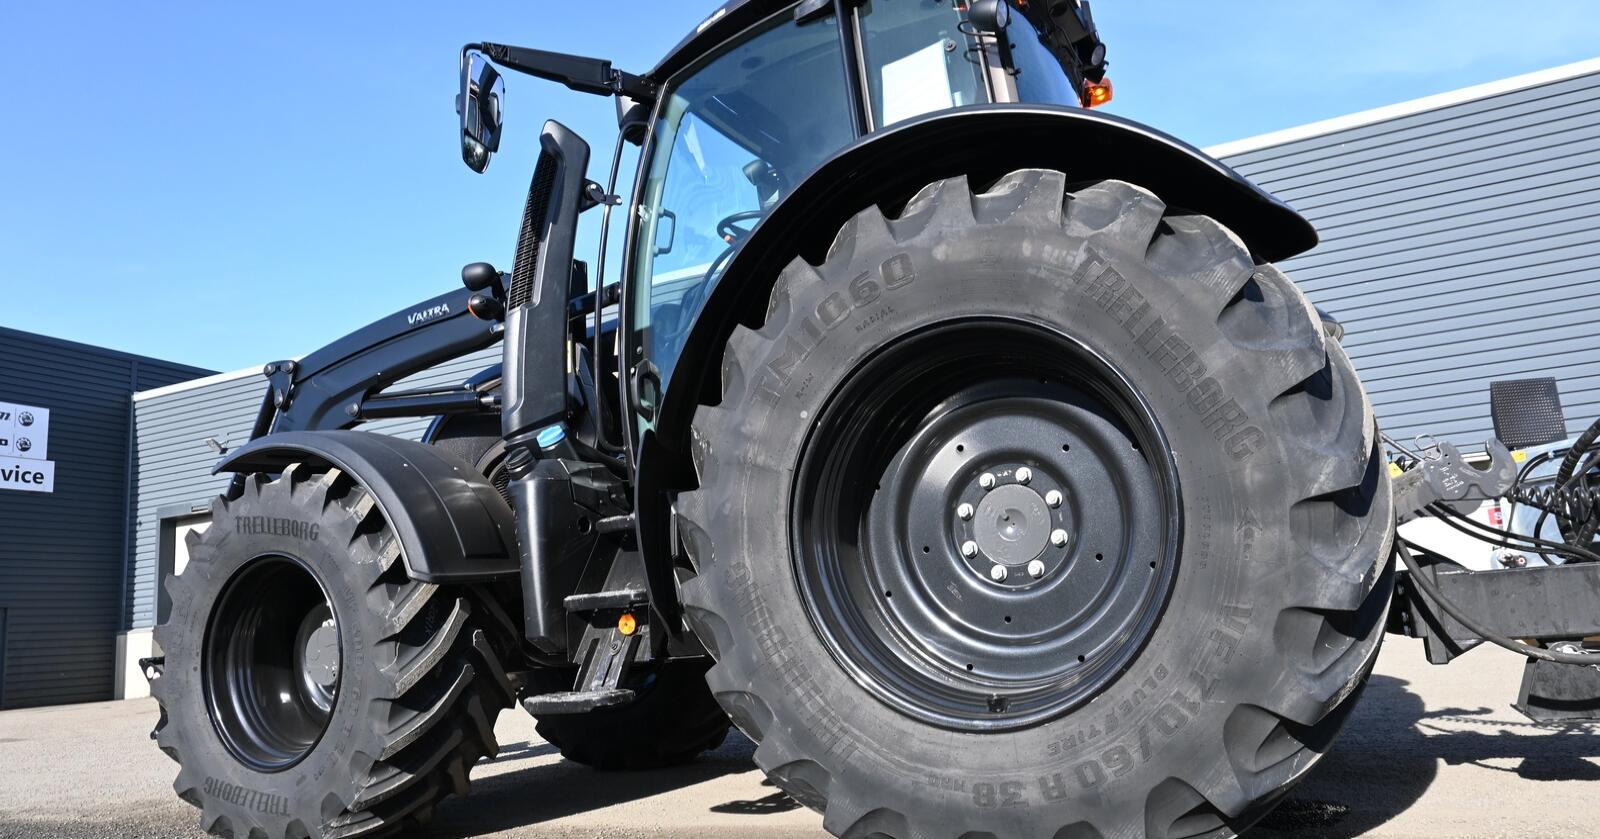 OEM: Mange traktorprodusenter som Valtra leverer dekk fra Trelleborg som standard eller tilvalg. Nå økes prisene med inntil15 prosent.